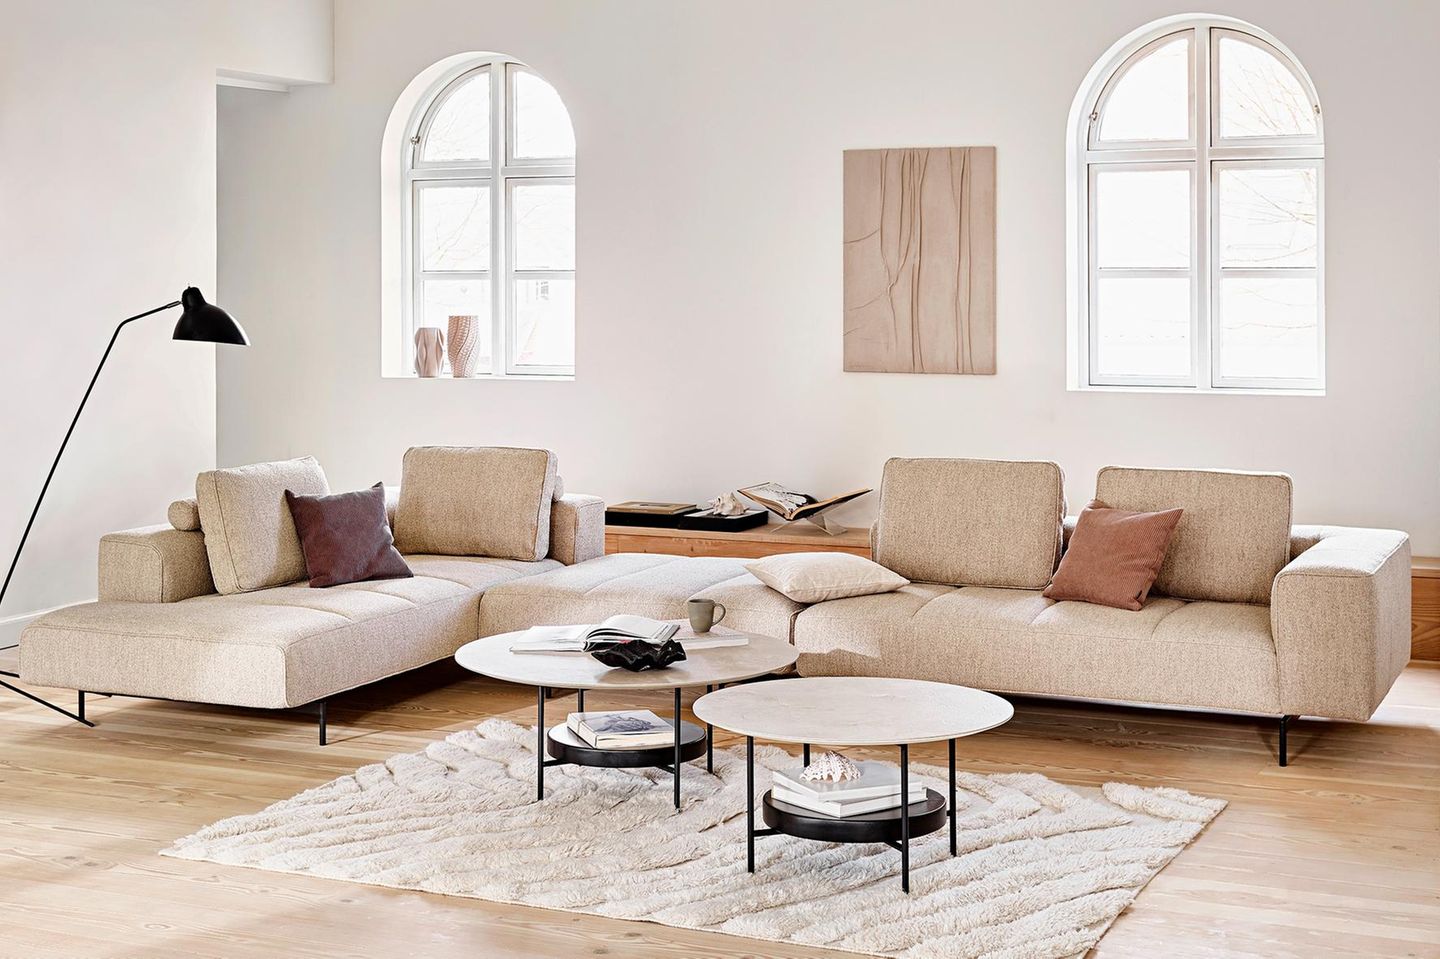 Bequemes Sofa finden: Maße, Sitzhöhe, Farben & mehr [SCHÖNER